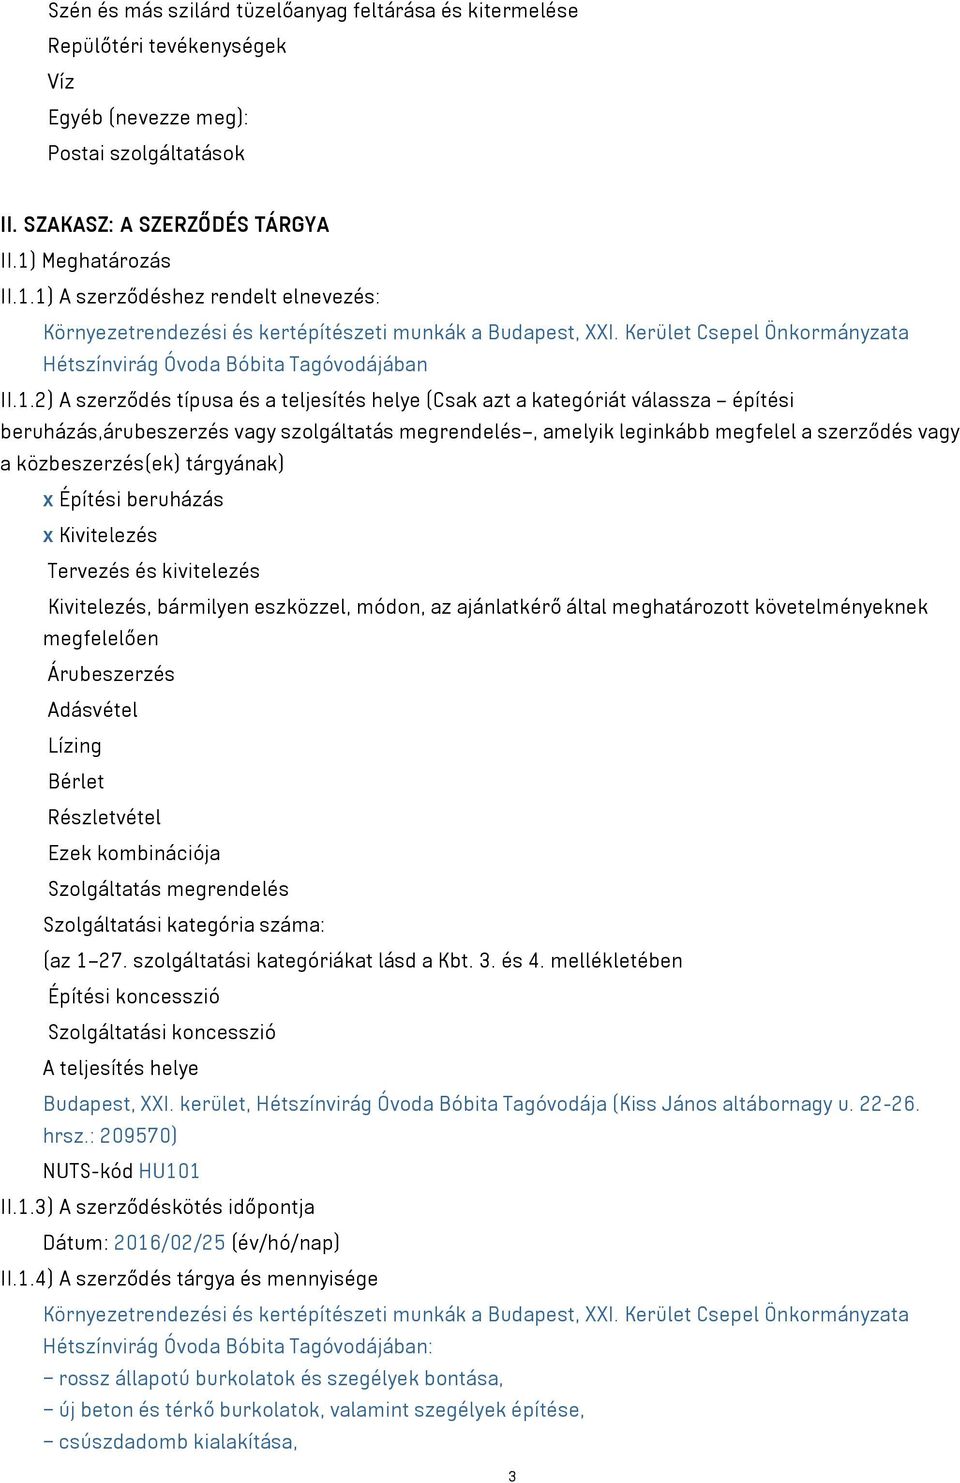 1) A szerződéshez rendelt elnevezés: Környezetrendezési és kertépítészeti munkák a Budapest, XXI. Kerület Csepel Önkormányzata Hétszínvirág Óvoda Bóbita Tagóvodájában II.1.2) A szerződés típusa és a